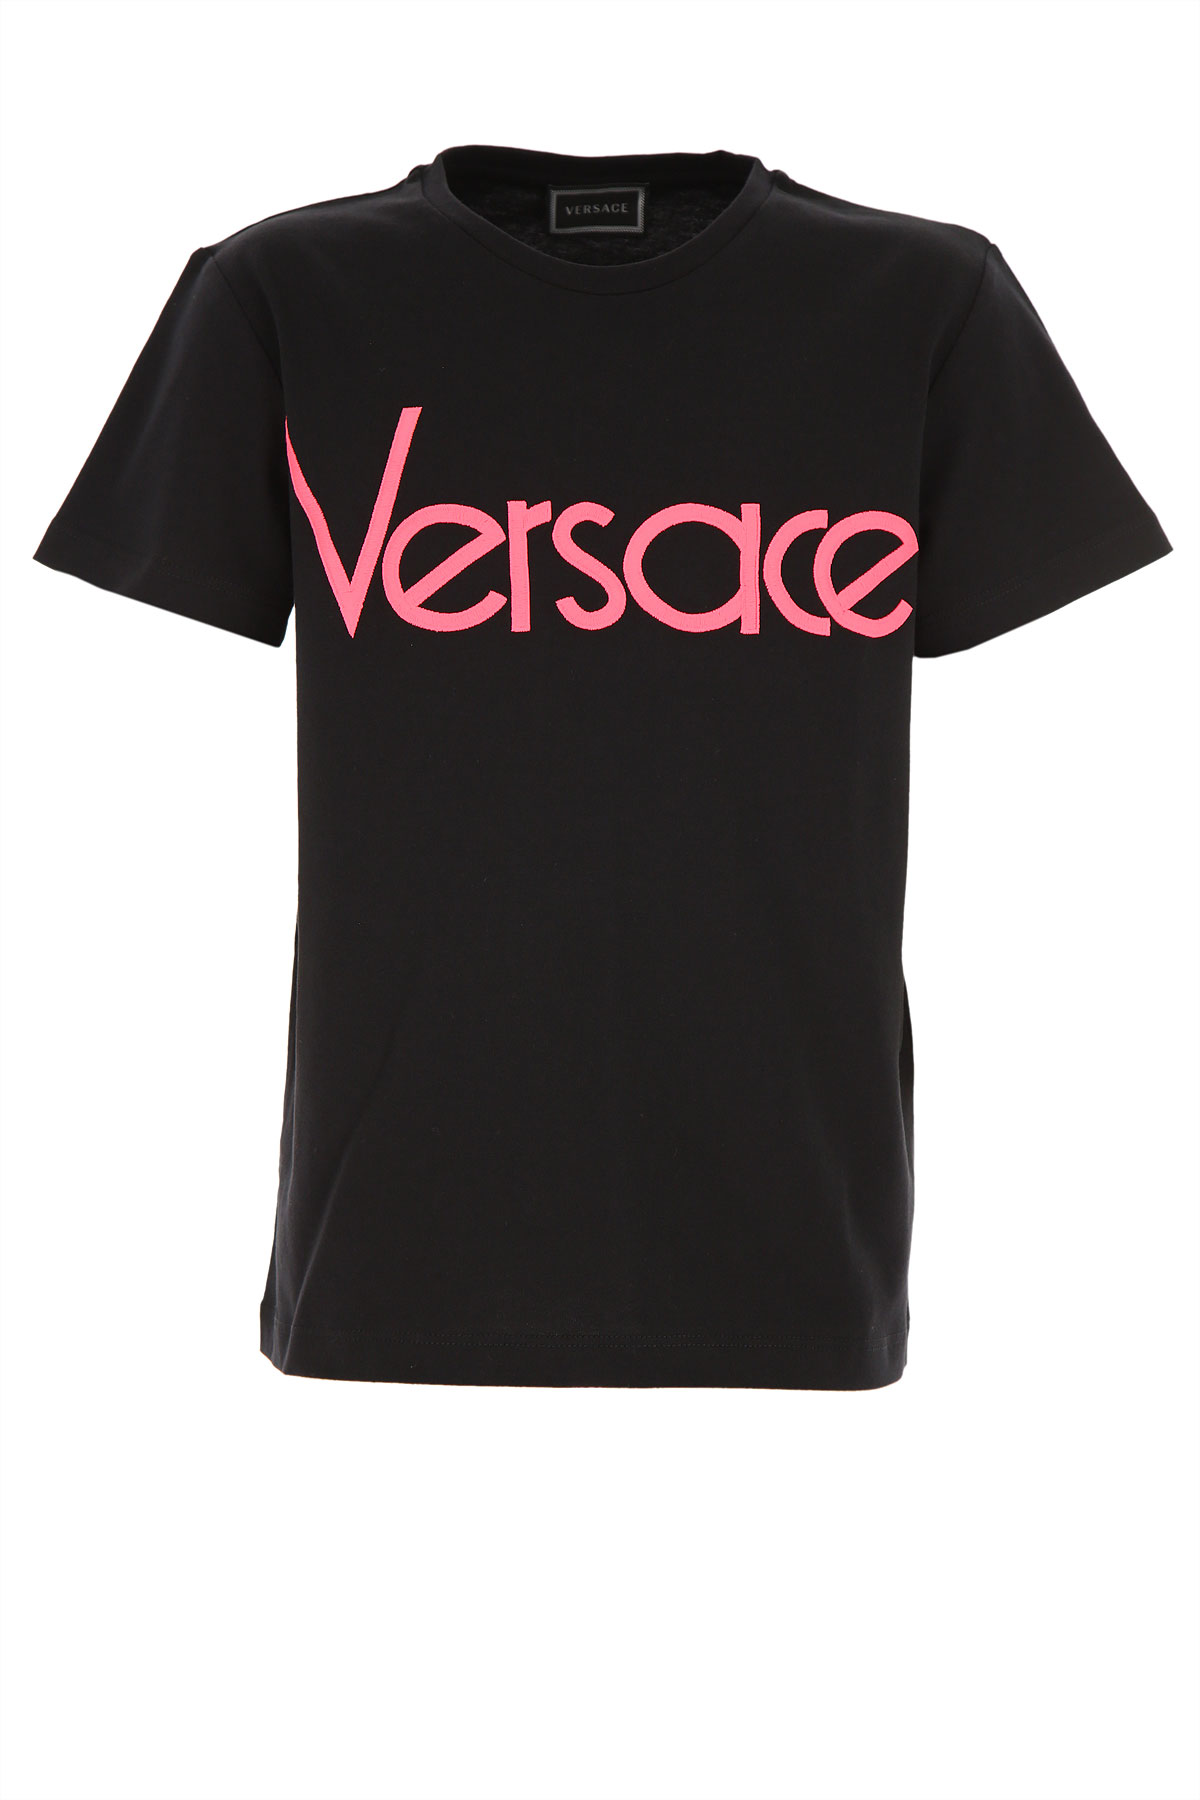 Versace Kinder T-Shirt für Mädchen Günstig im Sale, Schwarz, Baumwolle, 2017, 10Y 12Y 8Y